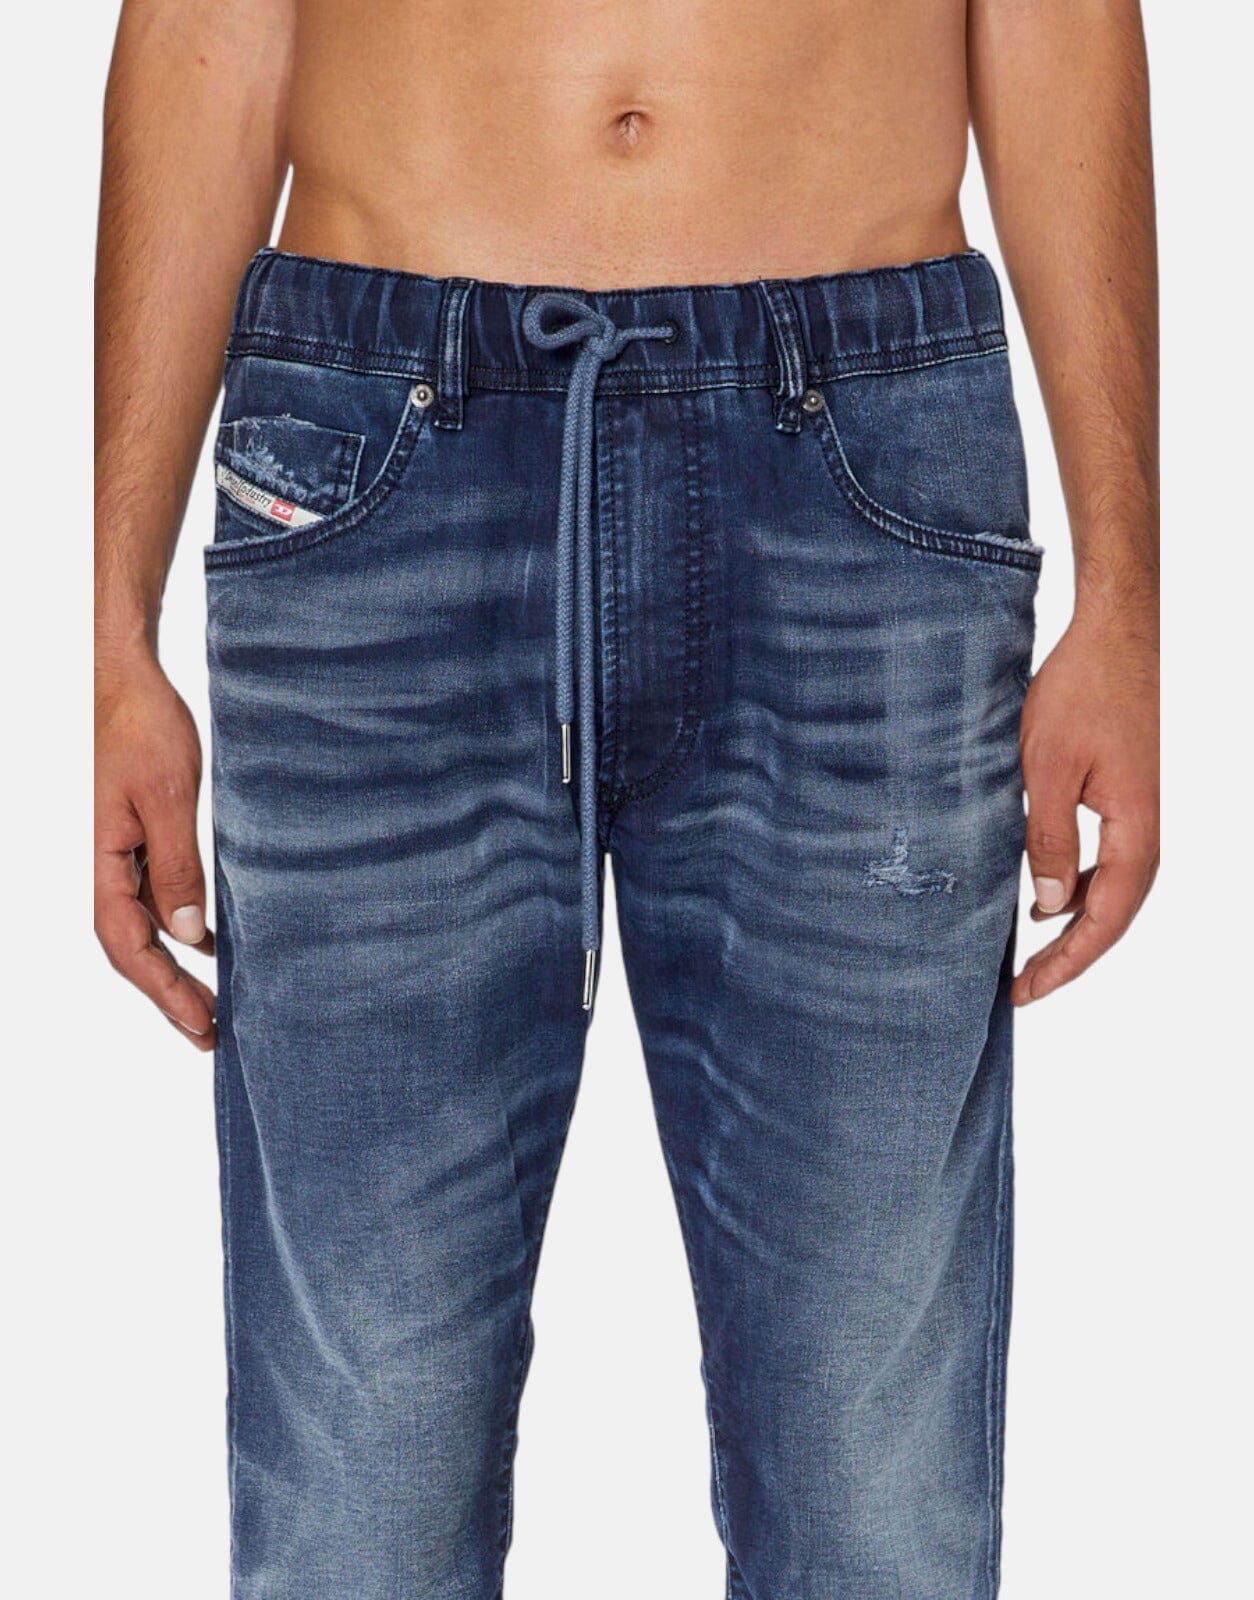 Diesel E-Spender Jogg Jeans - Subwear